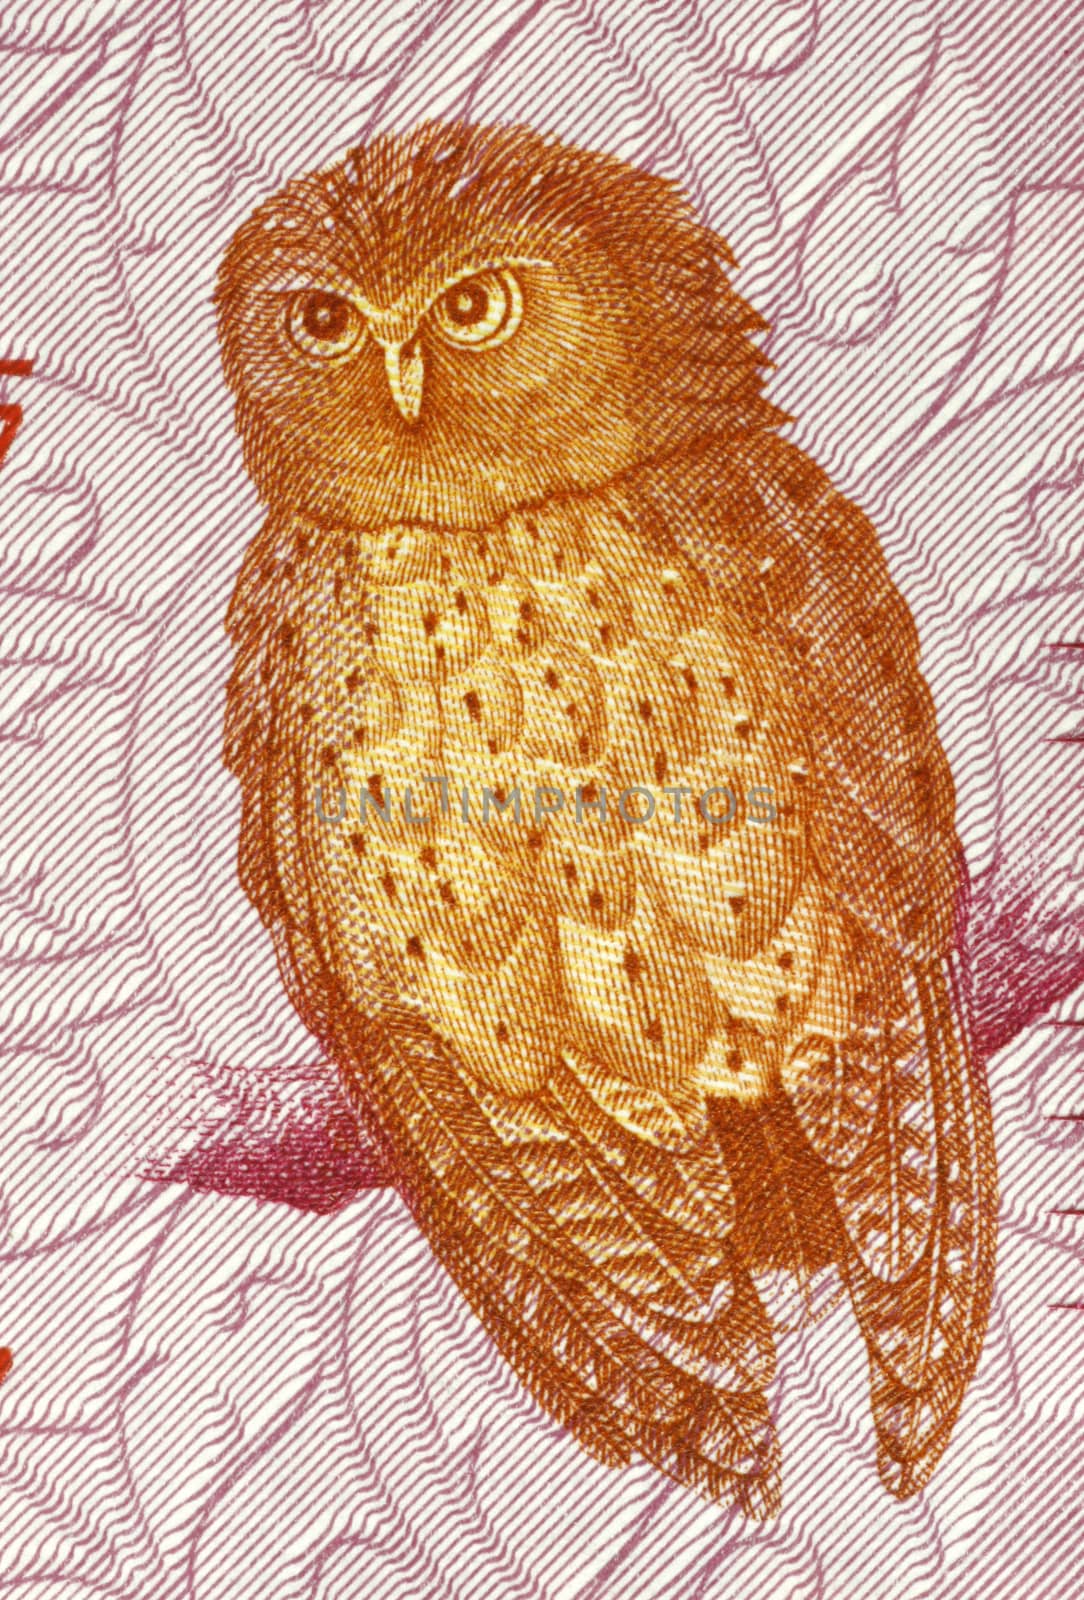 Serendib Scops Owl by Georgios